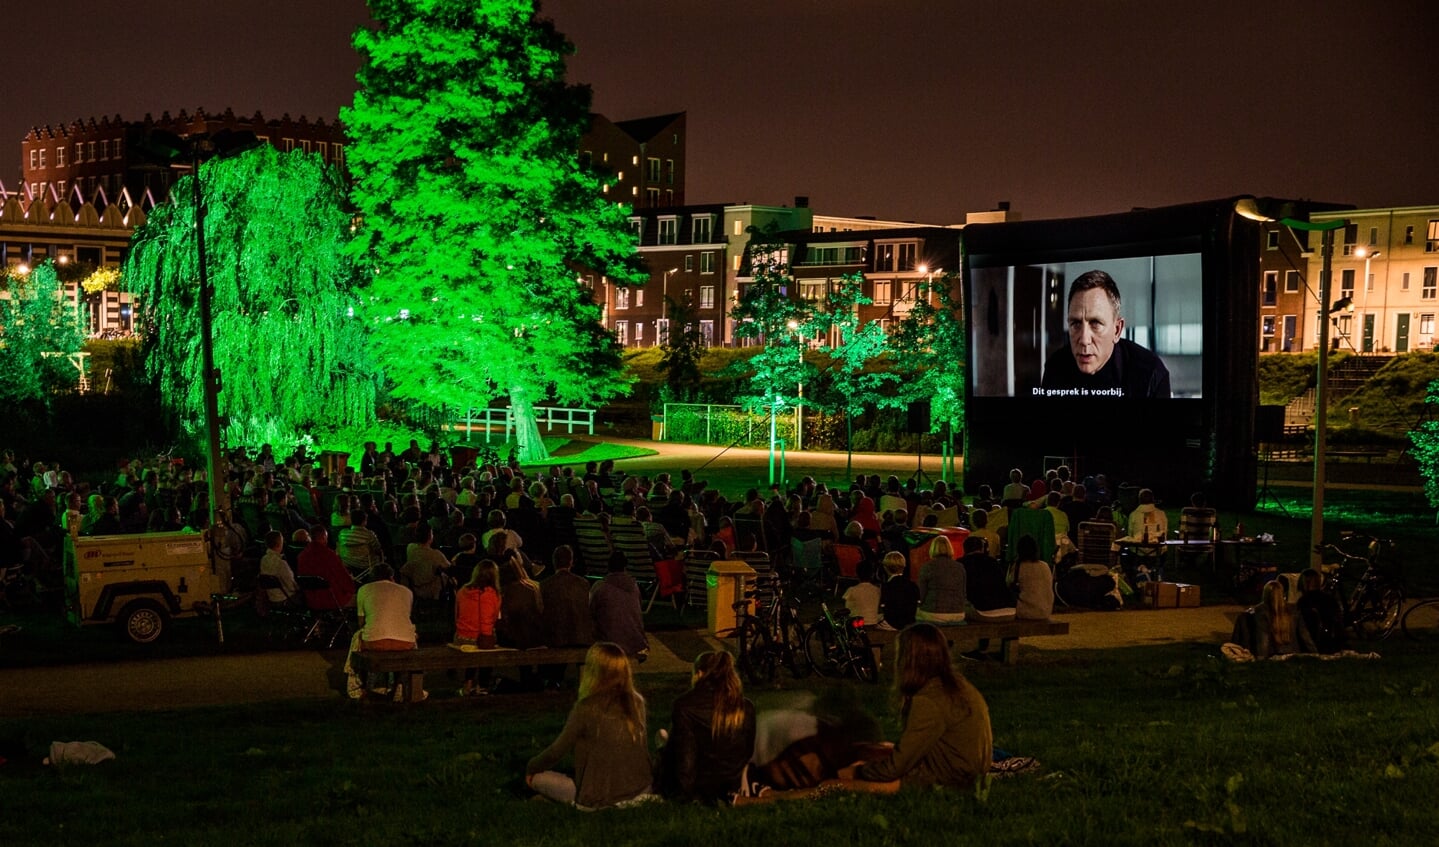 Eerder was James Bond ook al te zien op een mega scherm in de buitenlucht in Waddinxveen. (foto: pr)